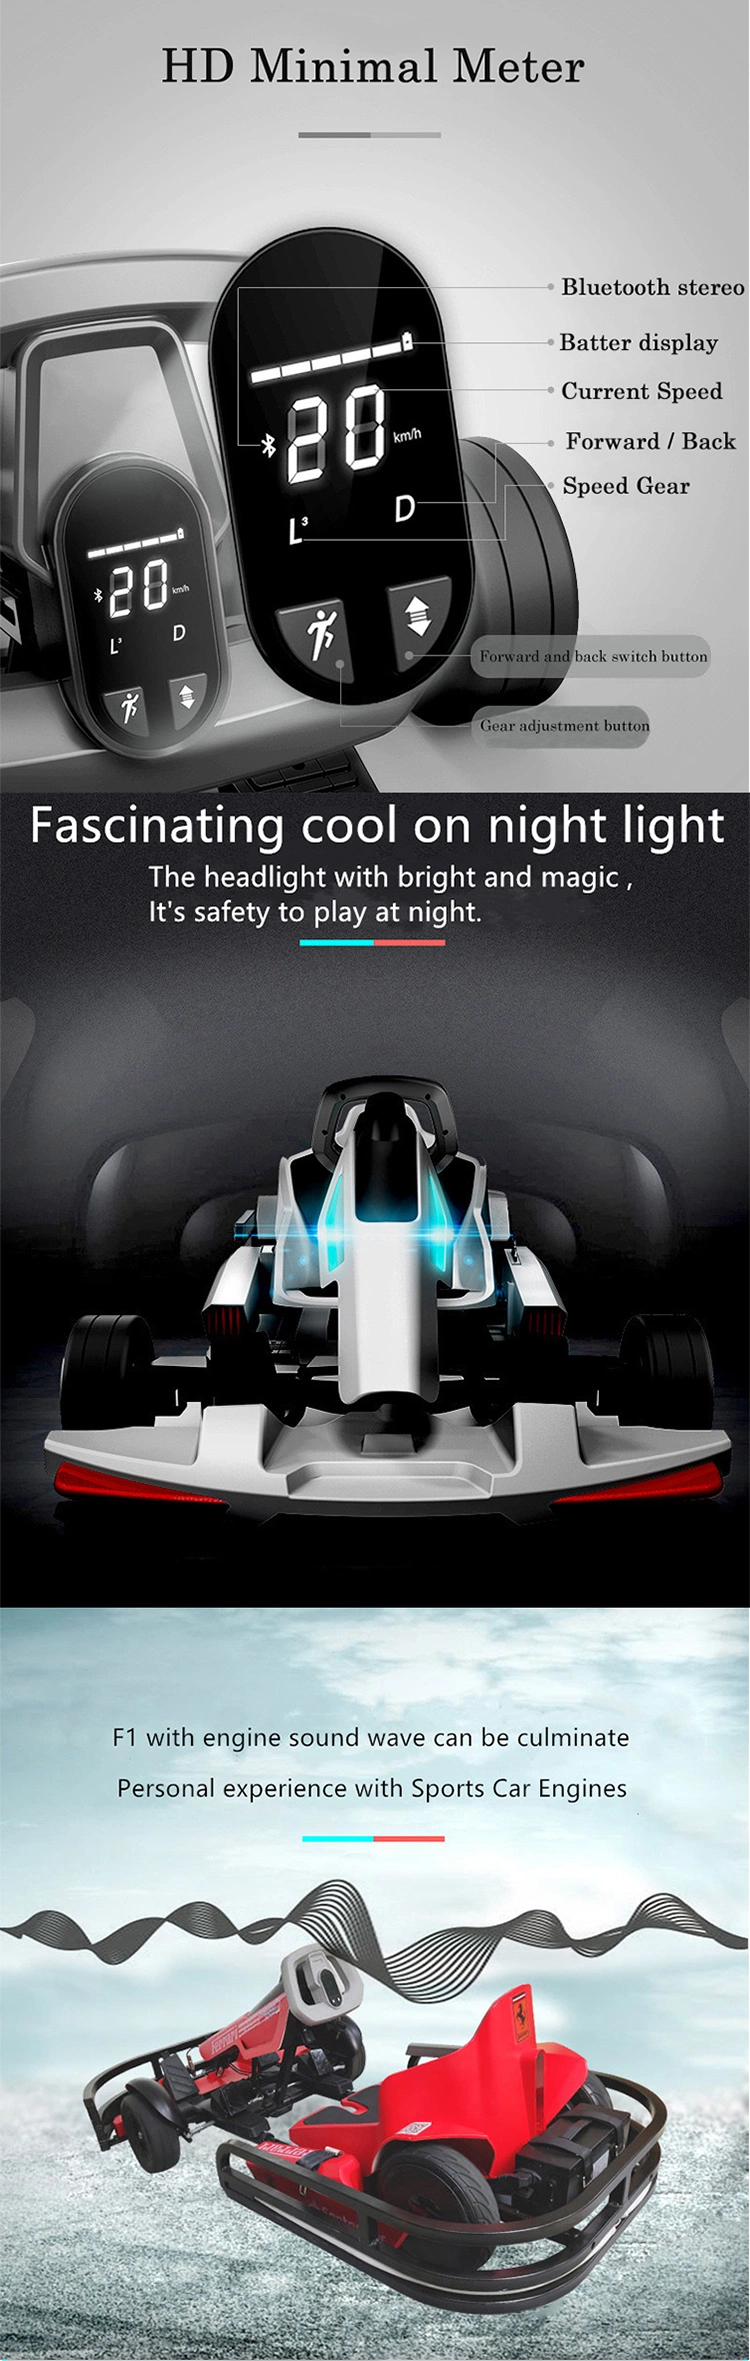 K9s Racing Awards/Uniform Sponsor Electric Go Karts Manufacturer